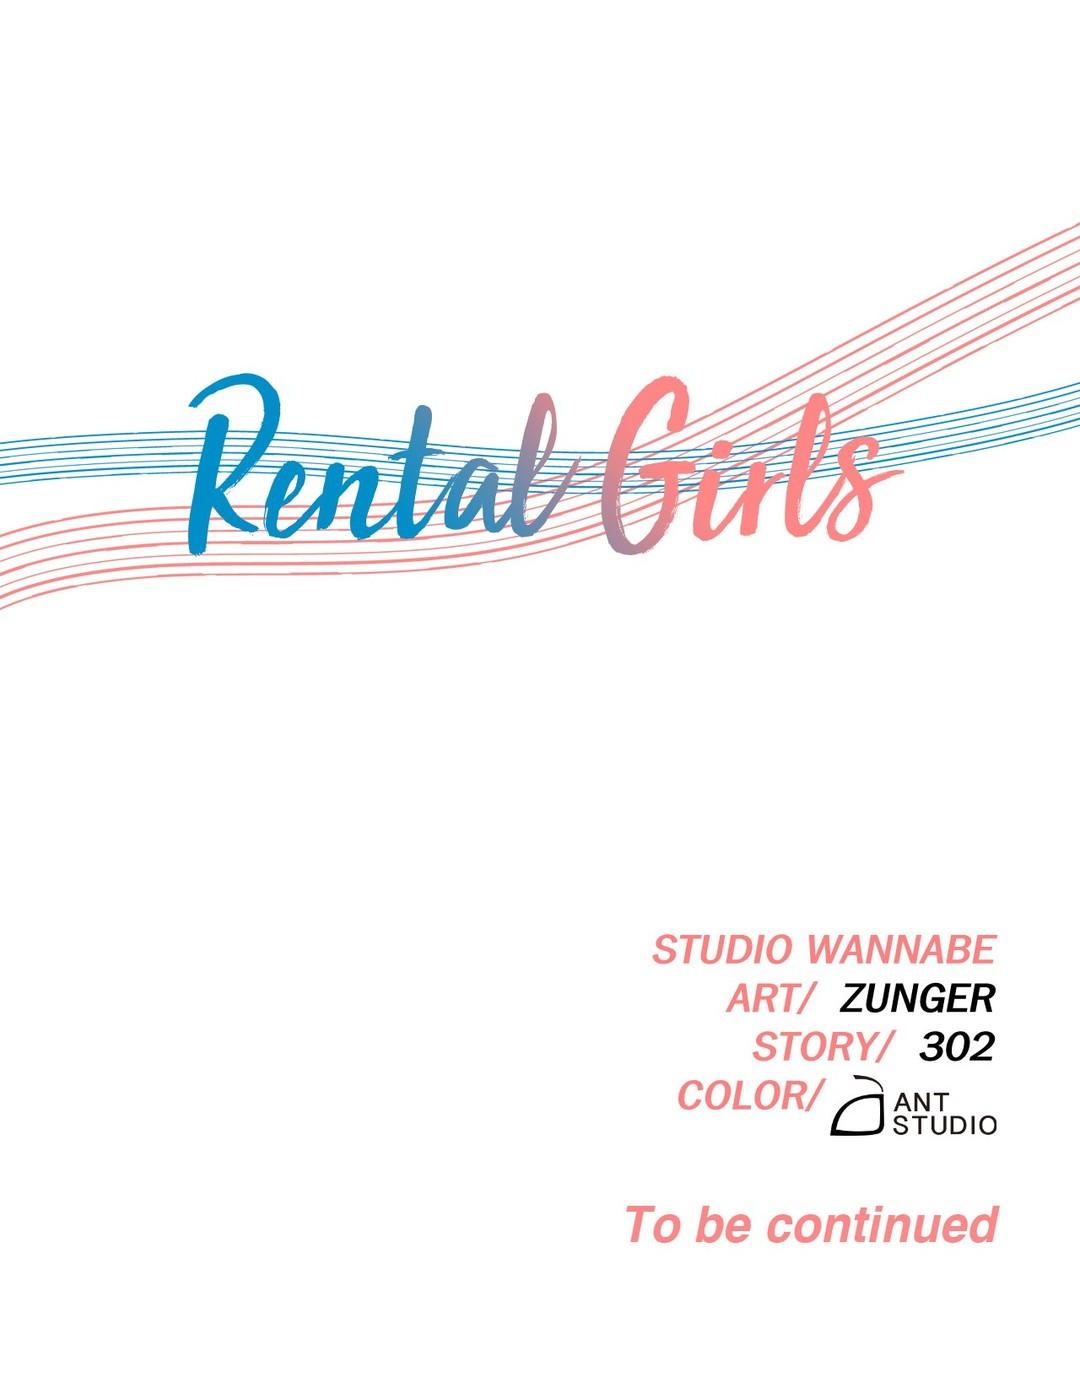 Rental Girls Ch 12 - 15 52